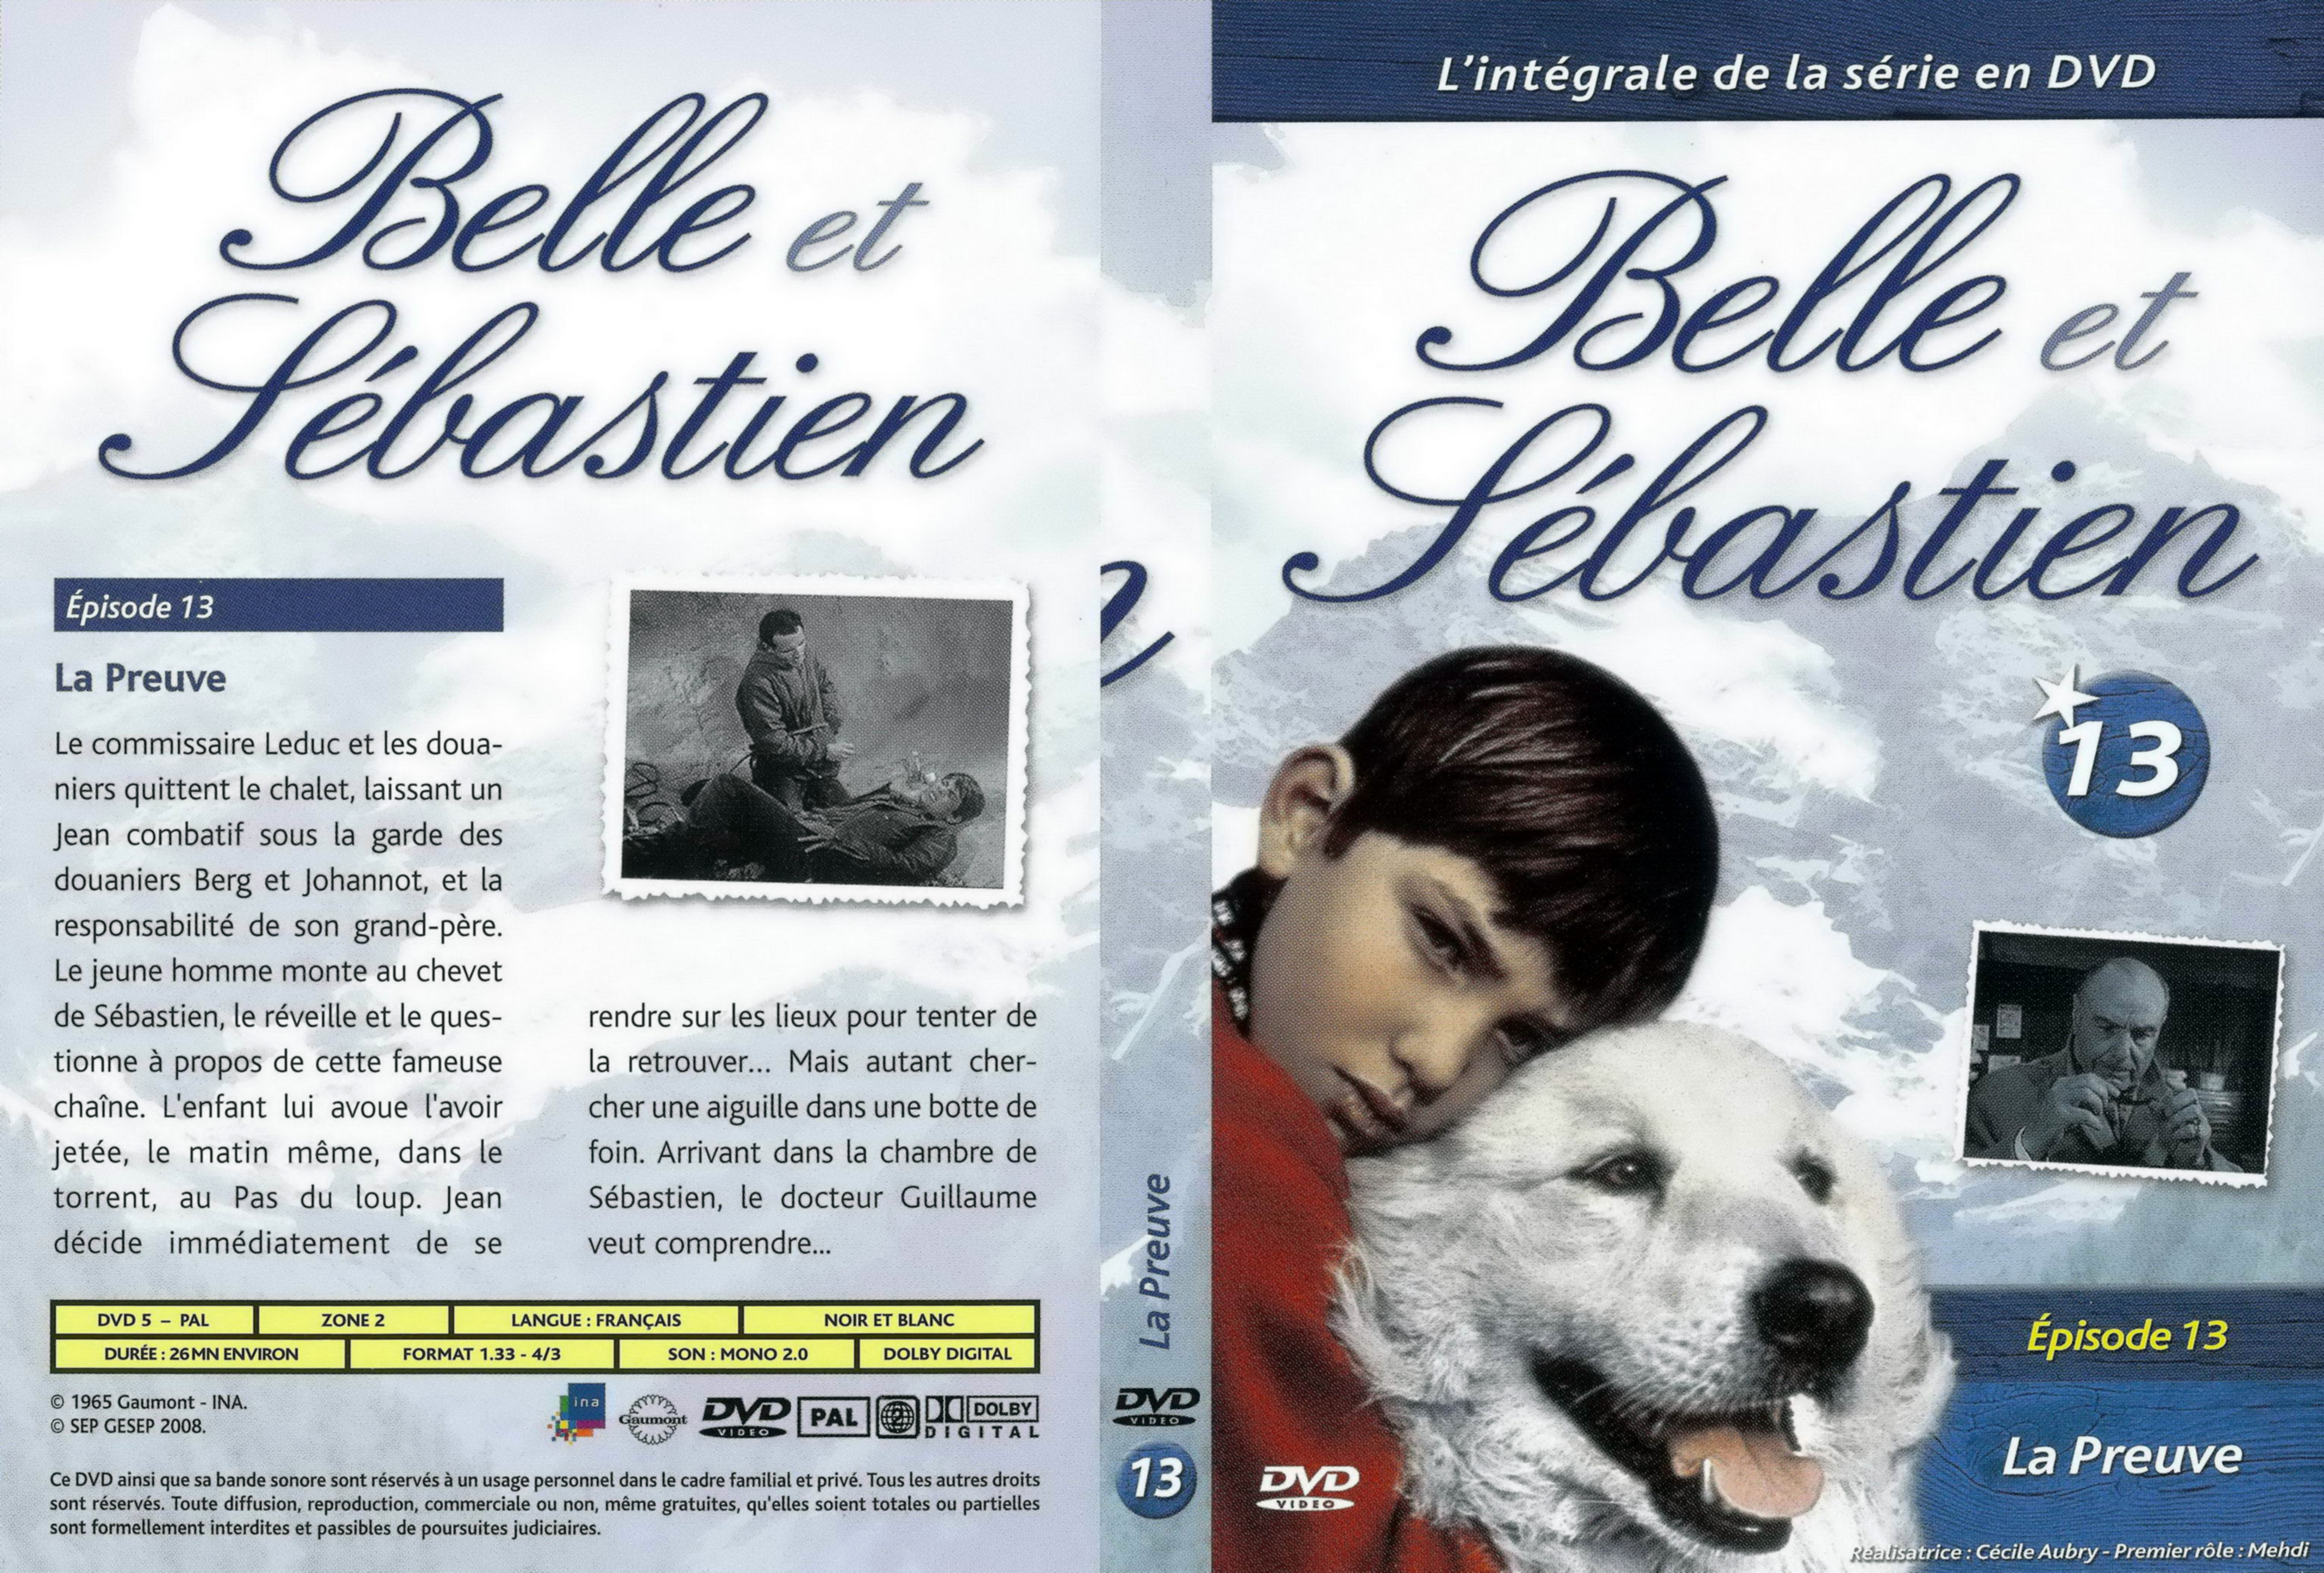 Jaquette DVD Belle et Sebastien la serie vol 13